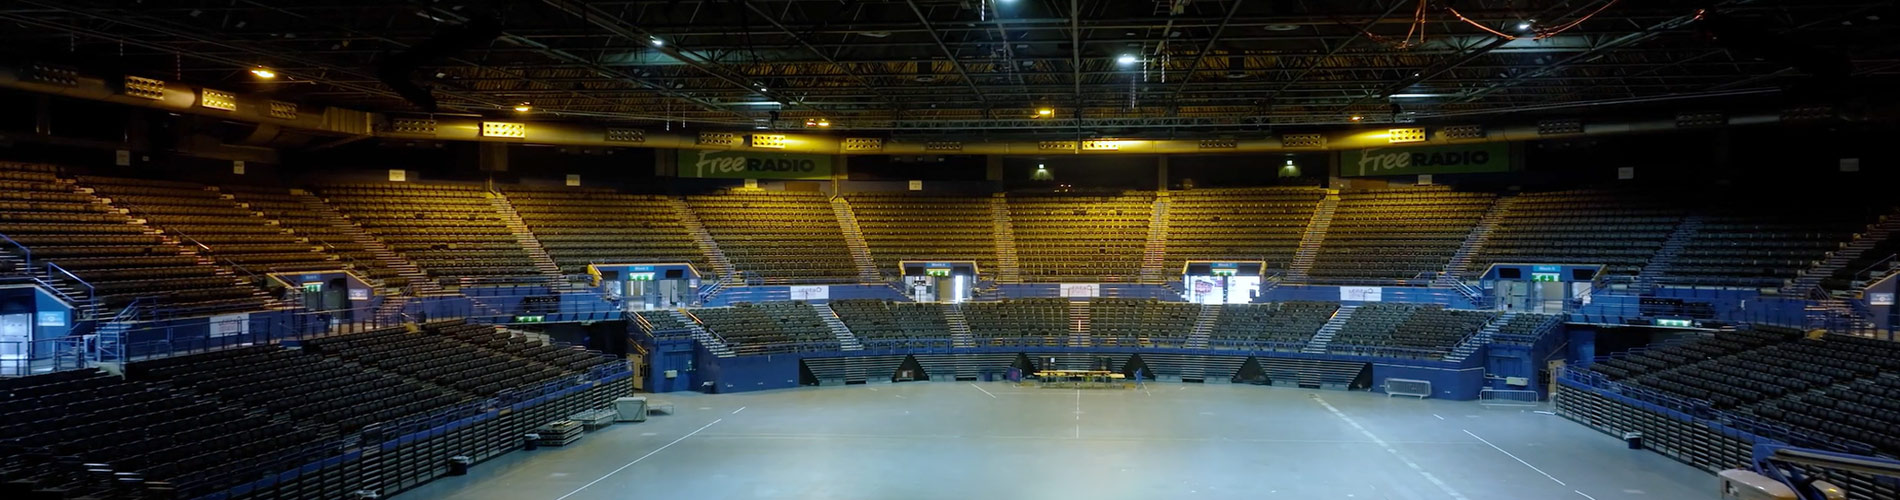 Introducing Arena Birmingham